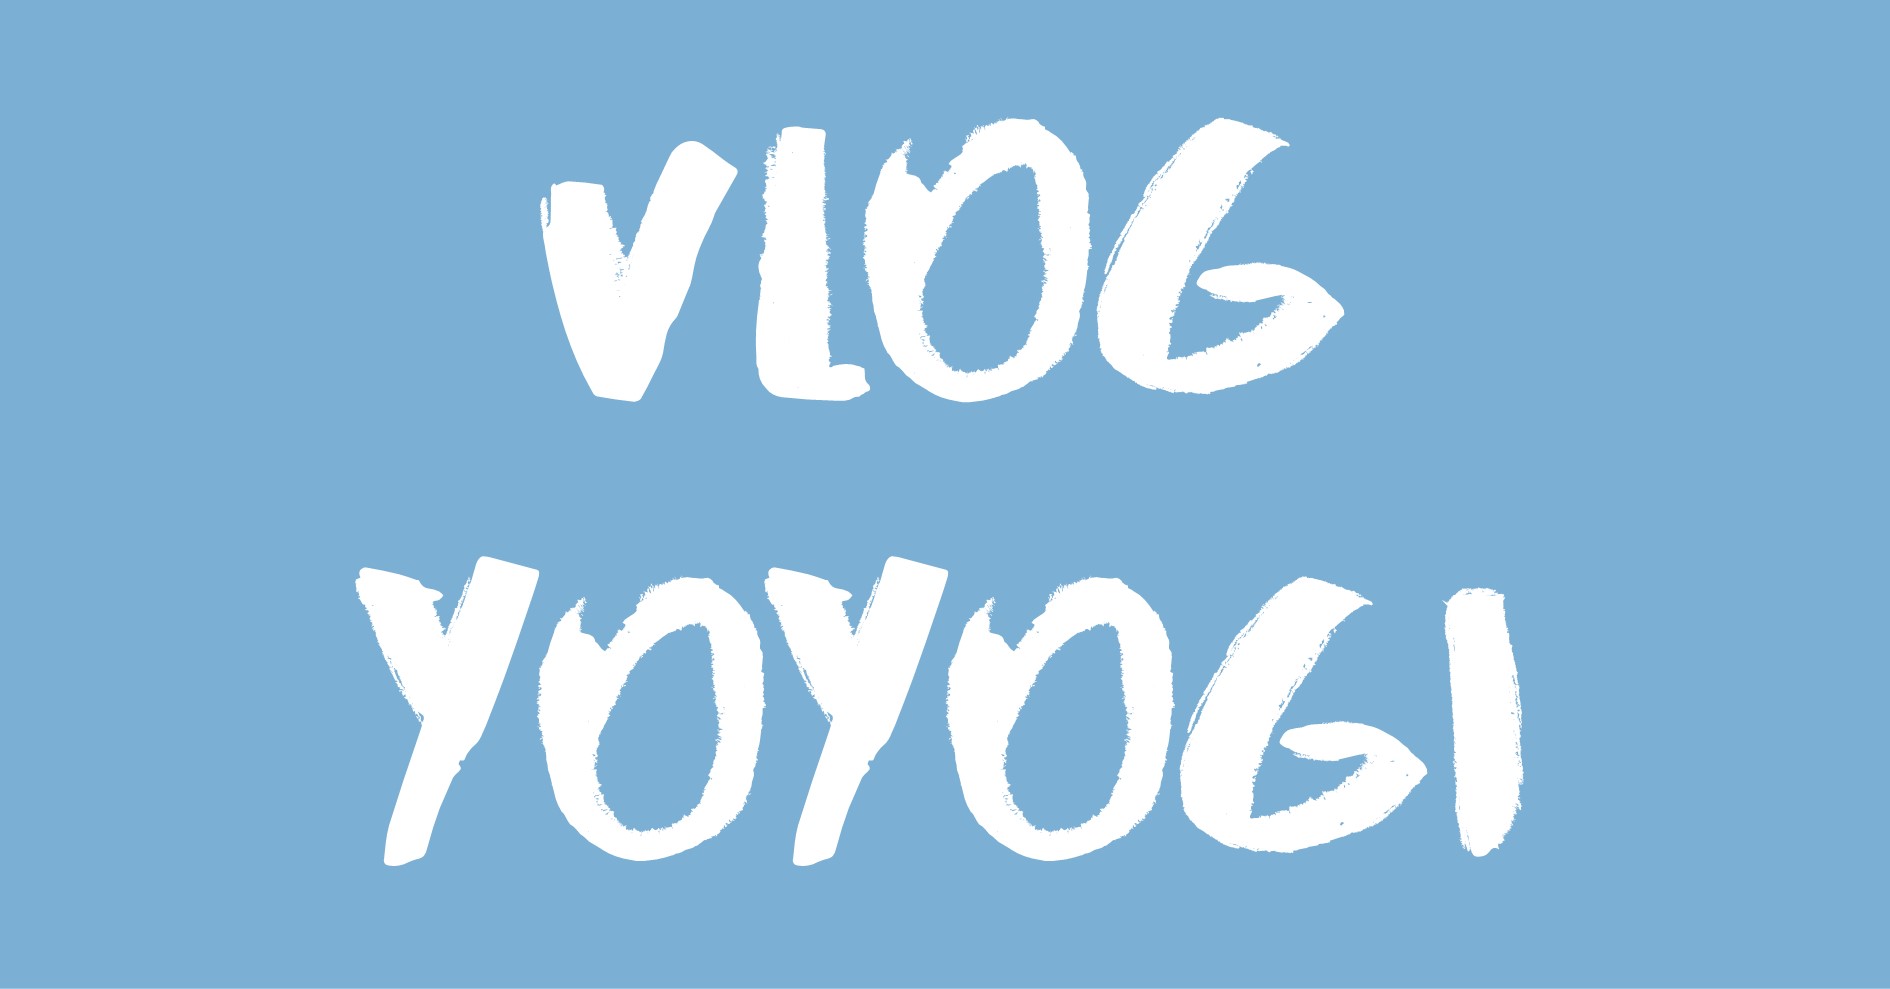 Vlog Yoyogi